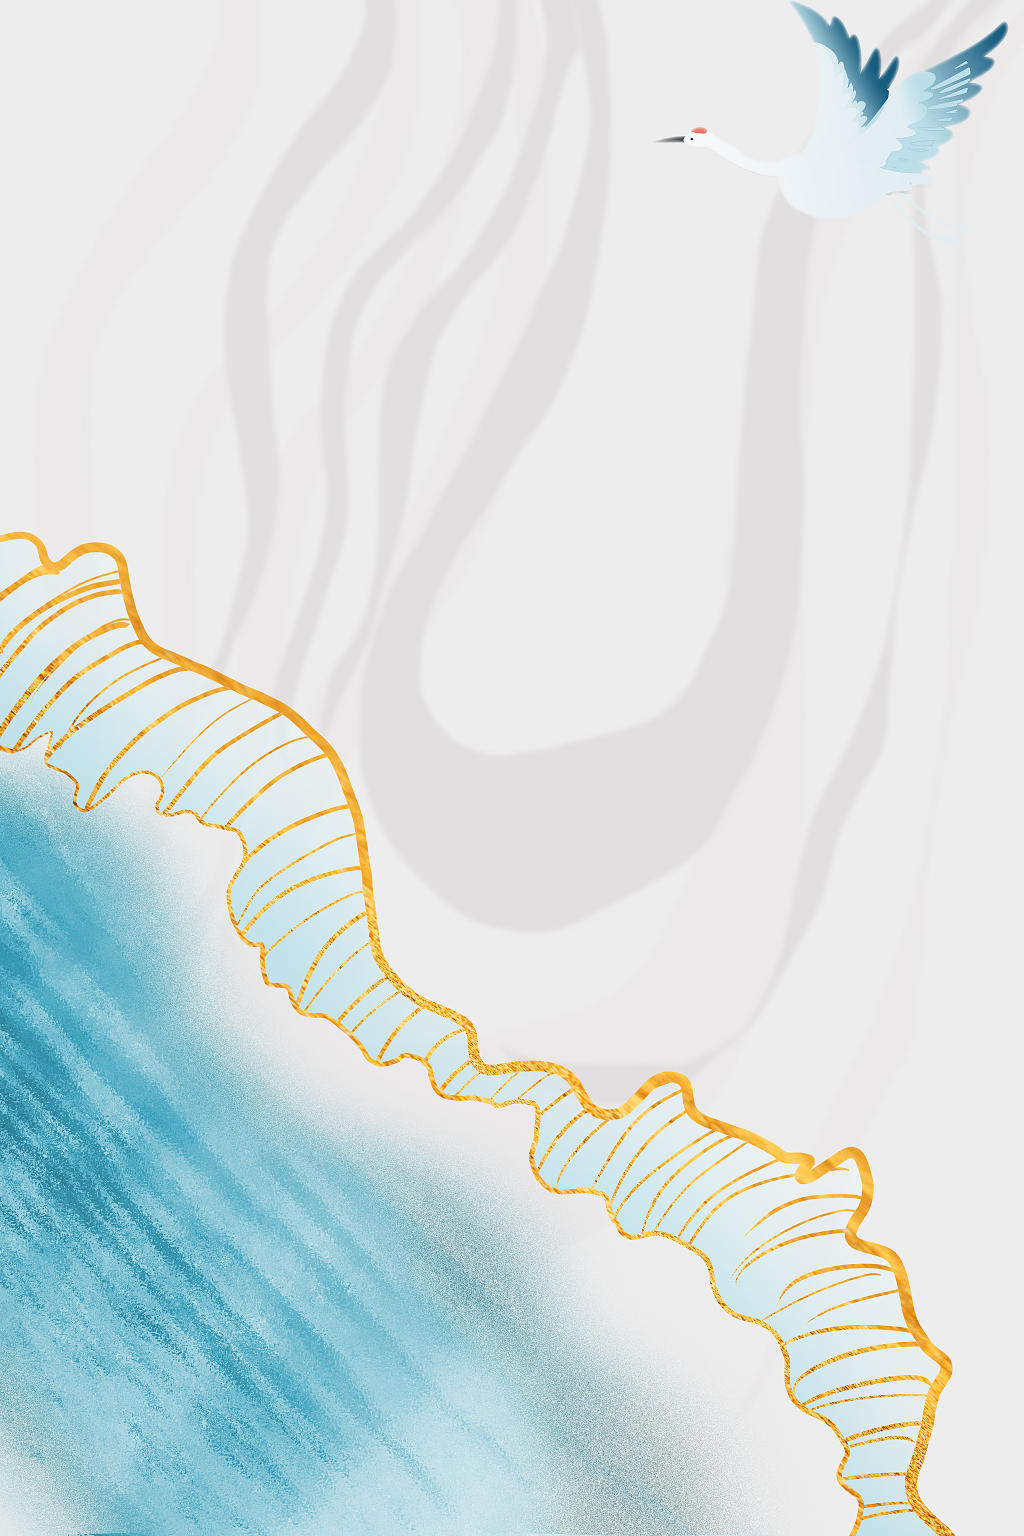 蓝色海浪灰色波纹海报仙鹤唯美简约白露节气海报背景